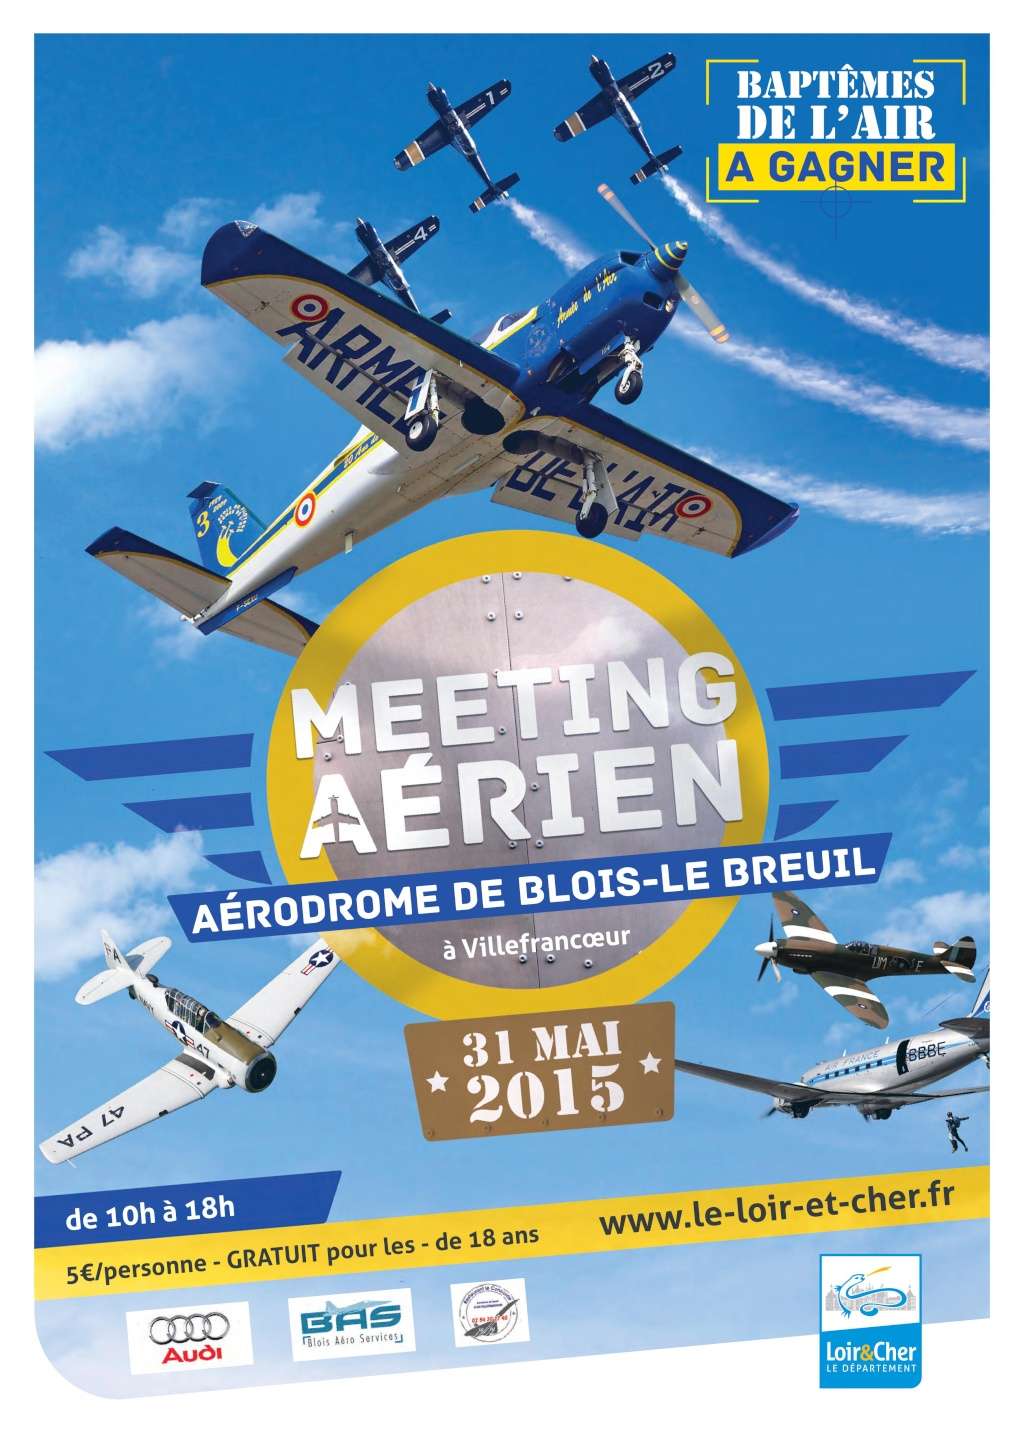 demo warbirds ,Meeting Aérien de Blois 2015, Aerodrome de Blois-le Breui, meeting aerien 2015, Meeting Aérien de Blois